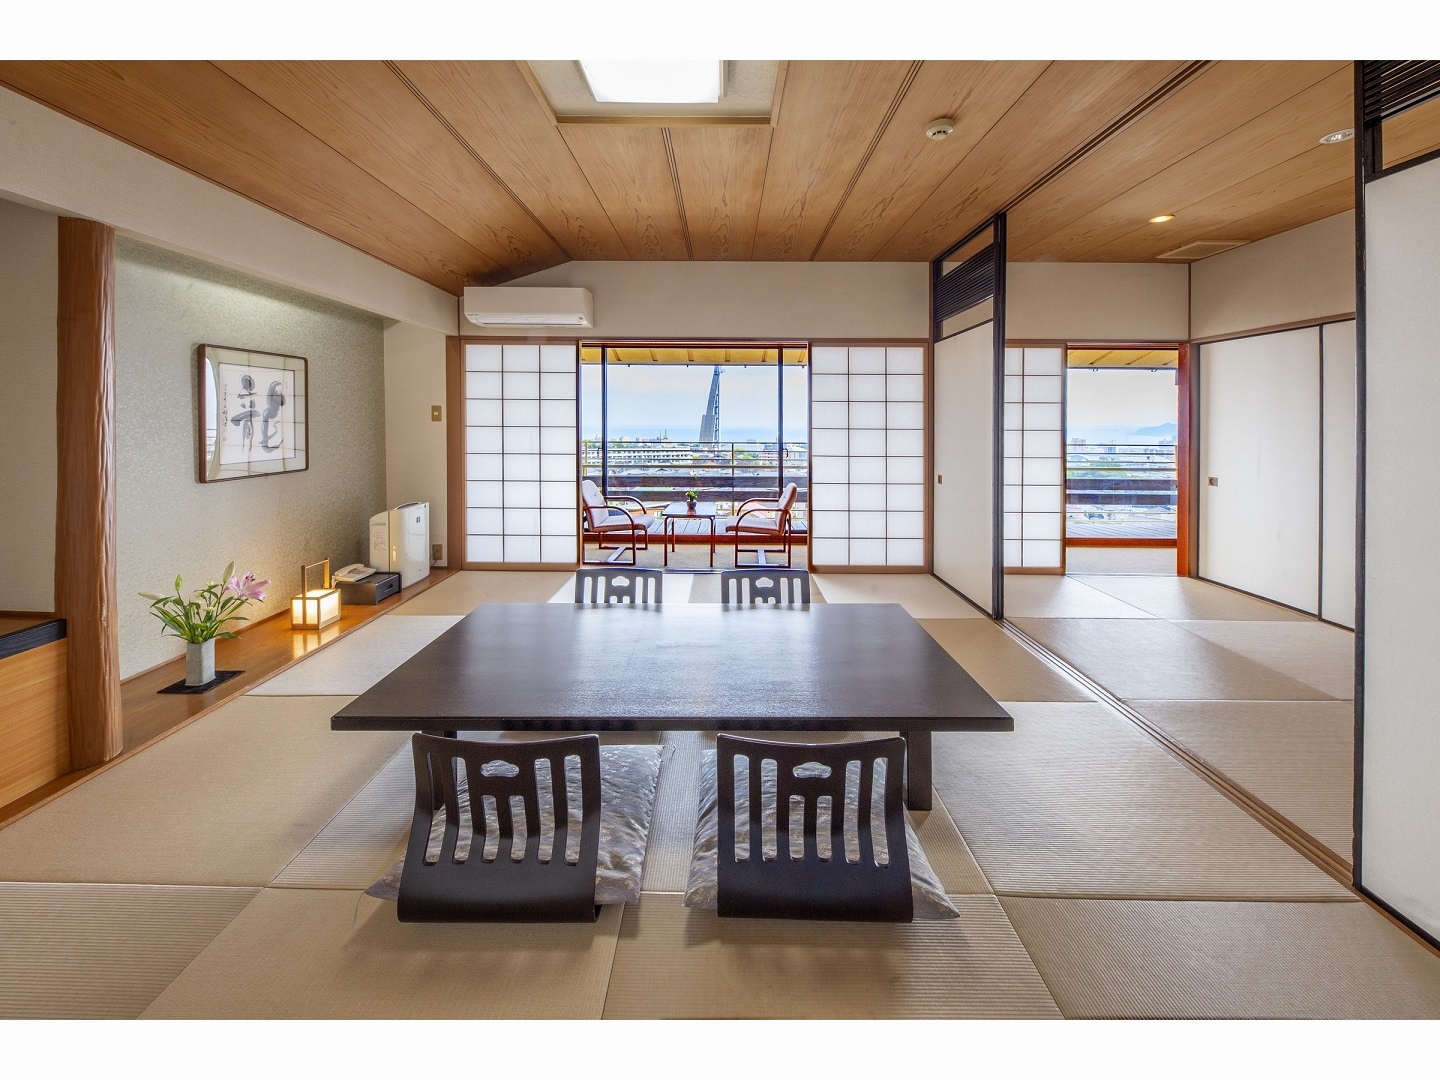 Kamar tamu-Kamar bergaya Jepang di lantai 3 di tepi laut 10 tikar tatami + 4 tikar tatami + pelek lebar